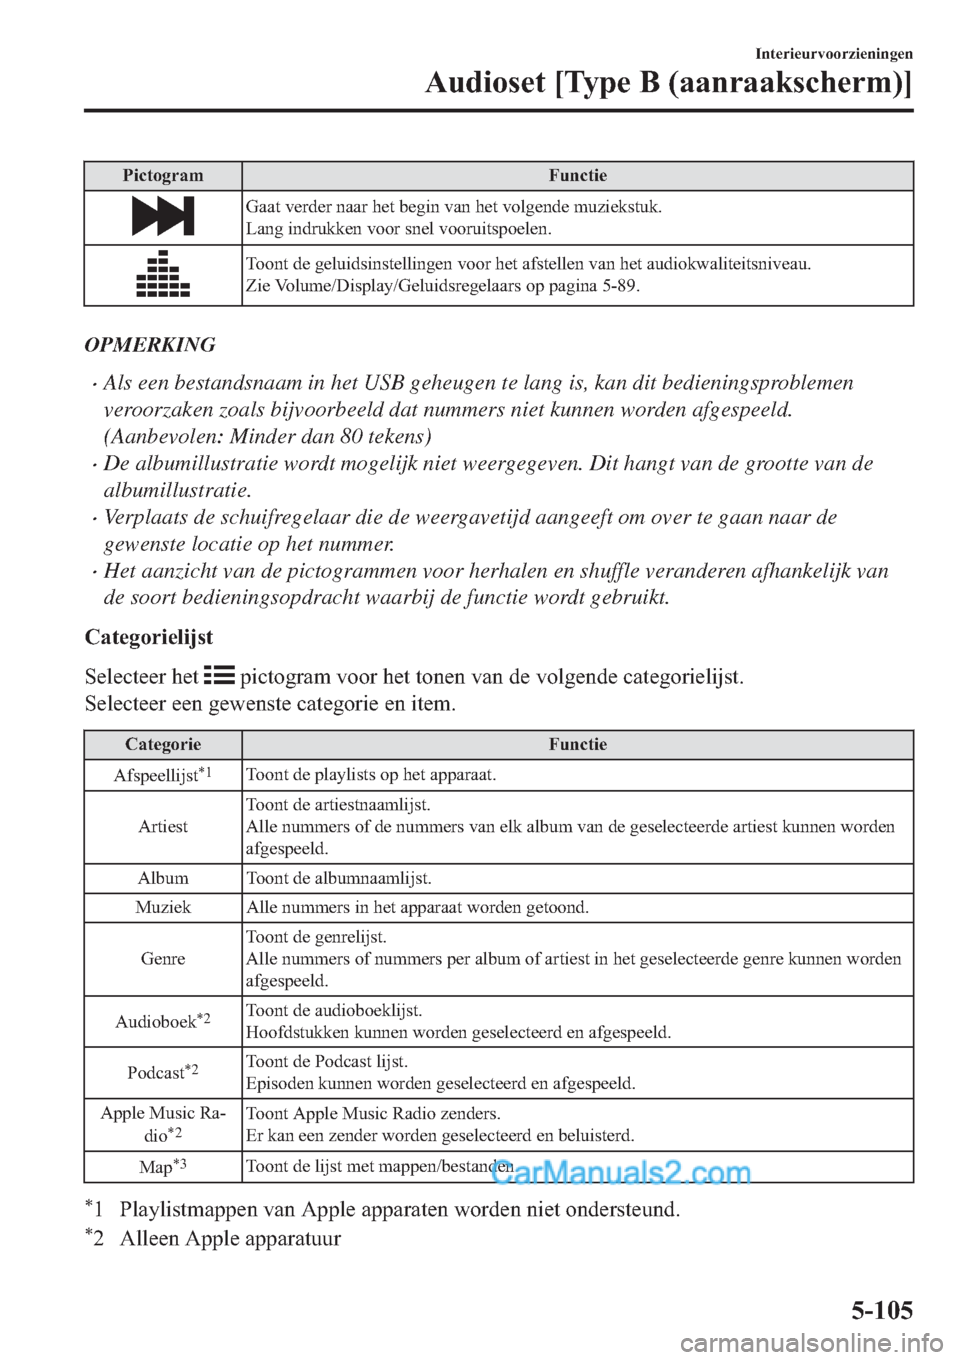 MAZDA MODEL 2 2019  Handleiding (in Dutch) �3�L�F�W�R�J�U�D�P �)�X�Q�F�W�L�H
�*�D�D�W��Y�H�U�G�H�U��Q�D�D�U��K�H�W��E�H�J�L�Q��Y�D�Q��K�H�W��Y�R�O�J�H�Q�G�H��P�X�]�L�H�N�V�W�X�N�
�/�D�Q�J��L�Q�G�U�X�N�N�H�Q��Y�R�R�U��V�Q�H�O��Y�R�